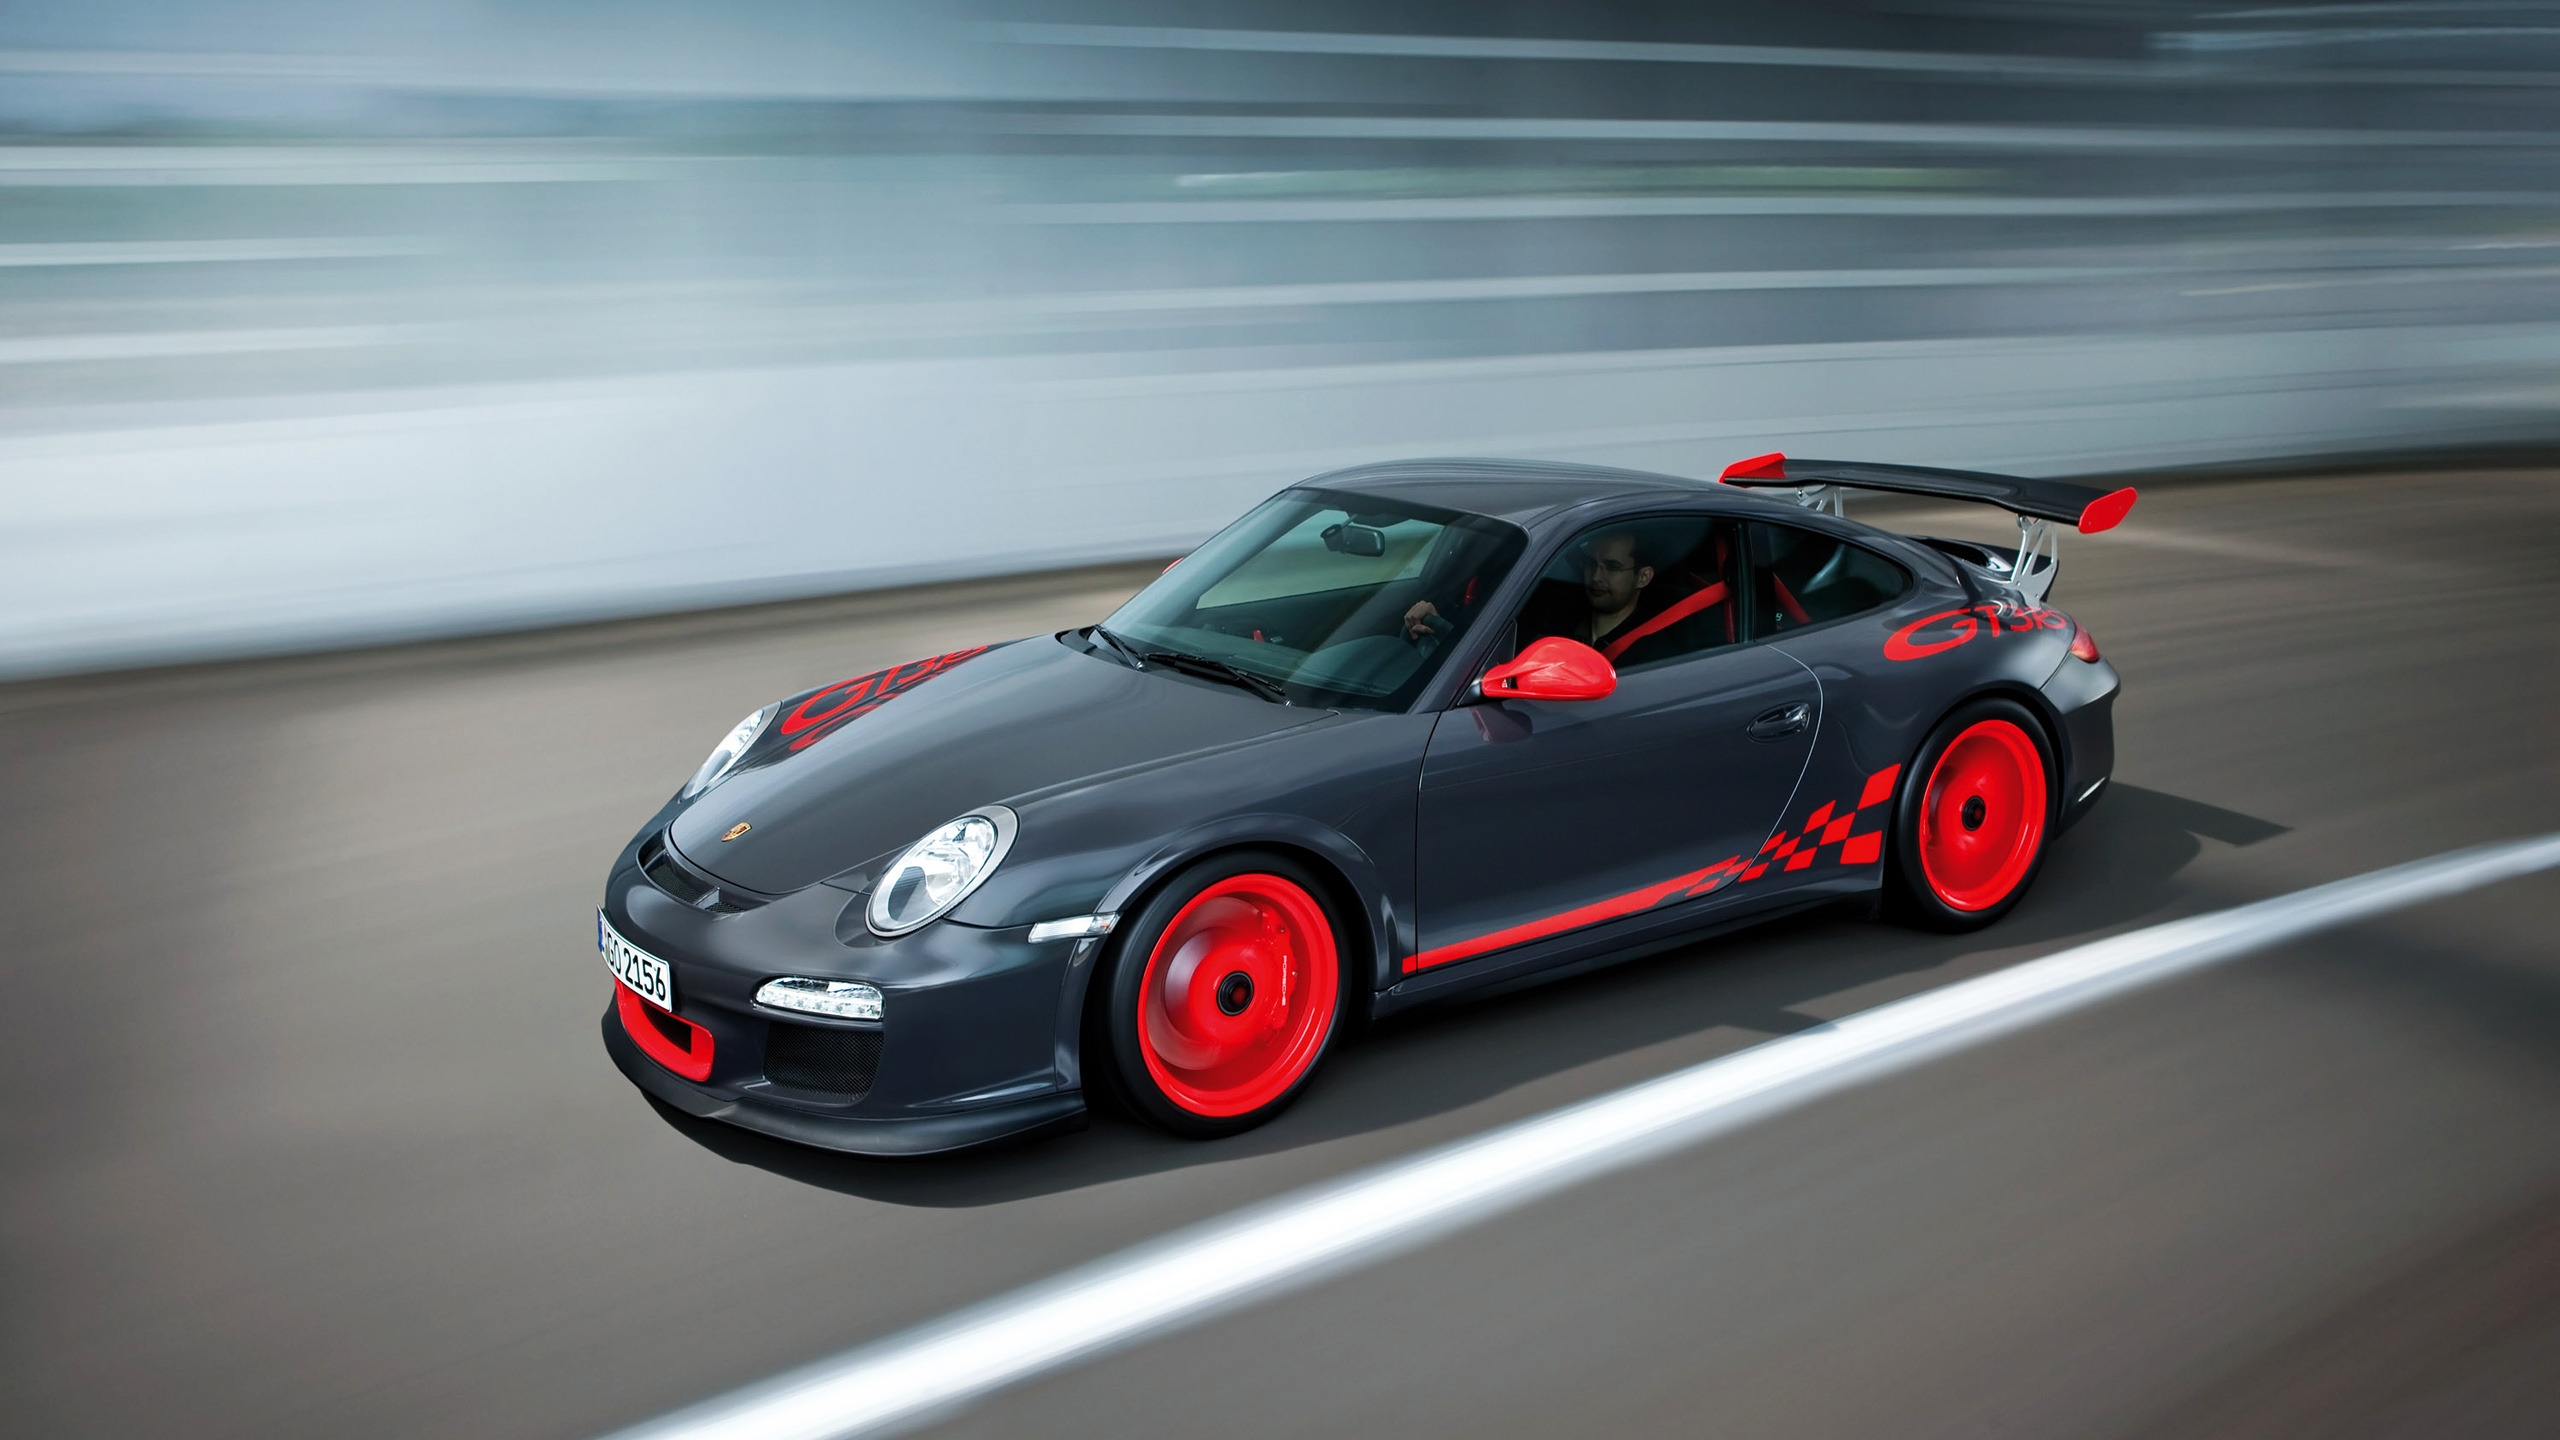 Porsche 911 GT3 RS for 2560x1440 HDTV resolution